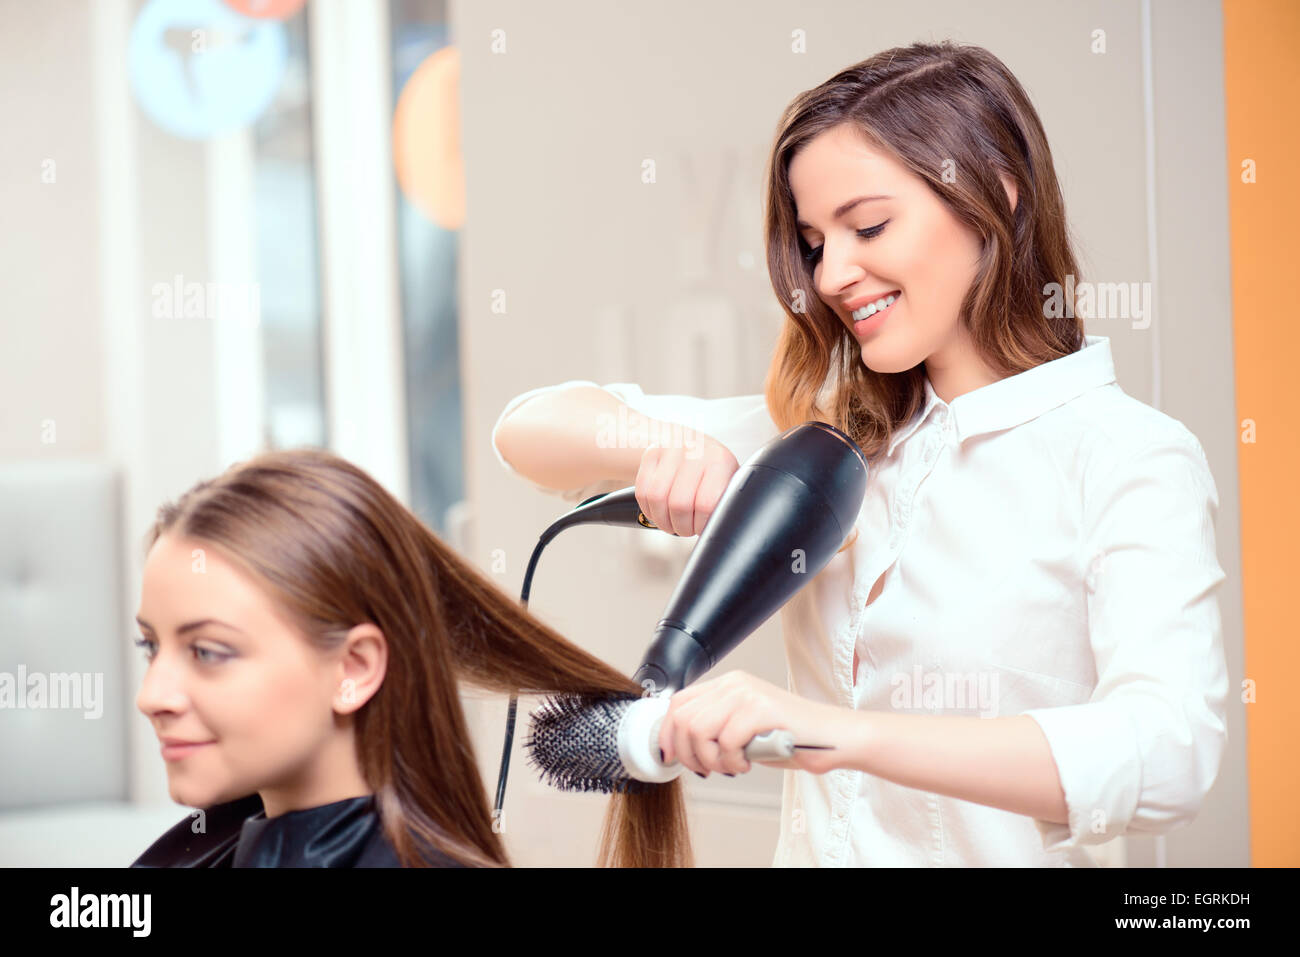 Beautiful woman in hair salon Stock Photo